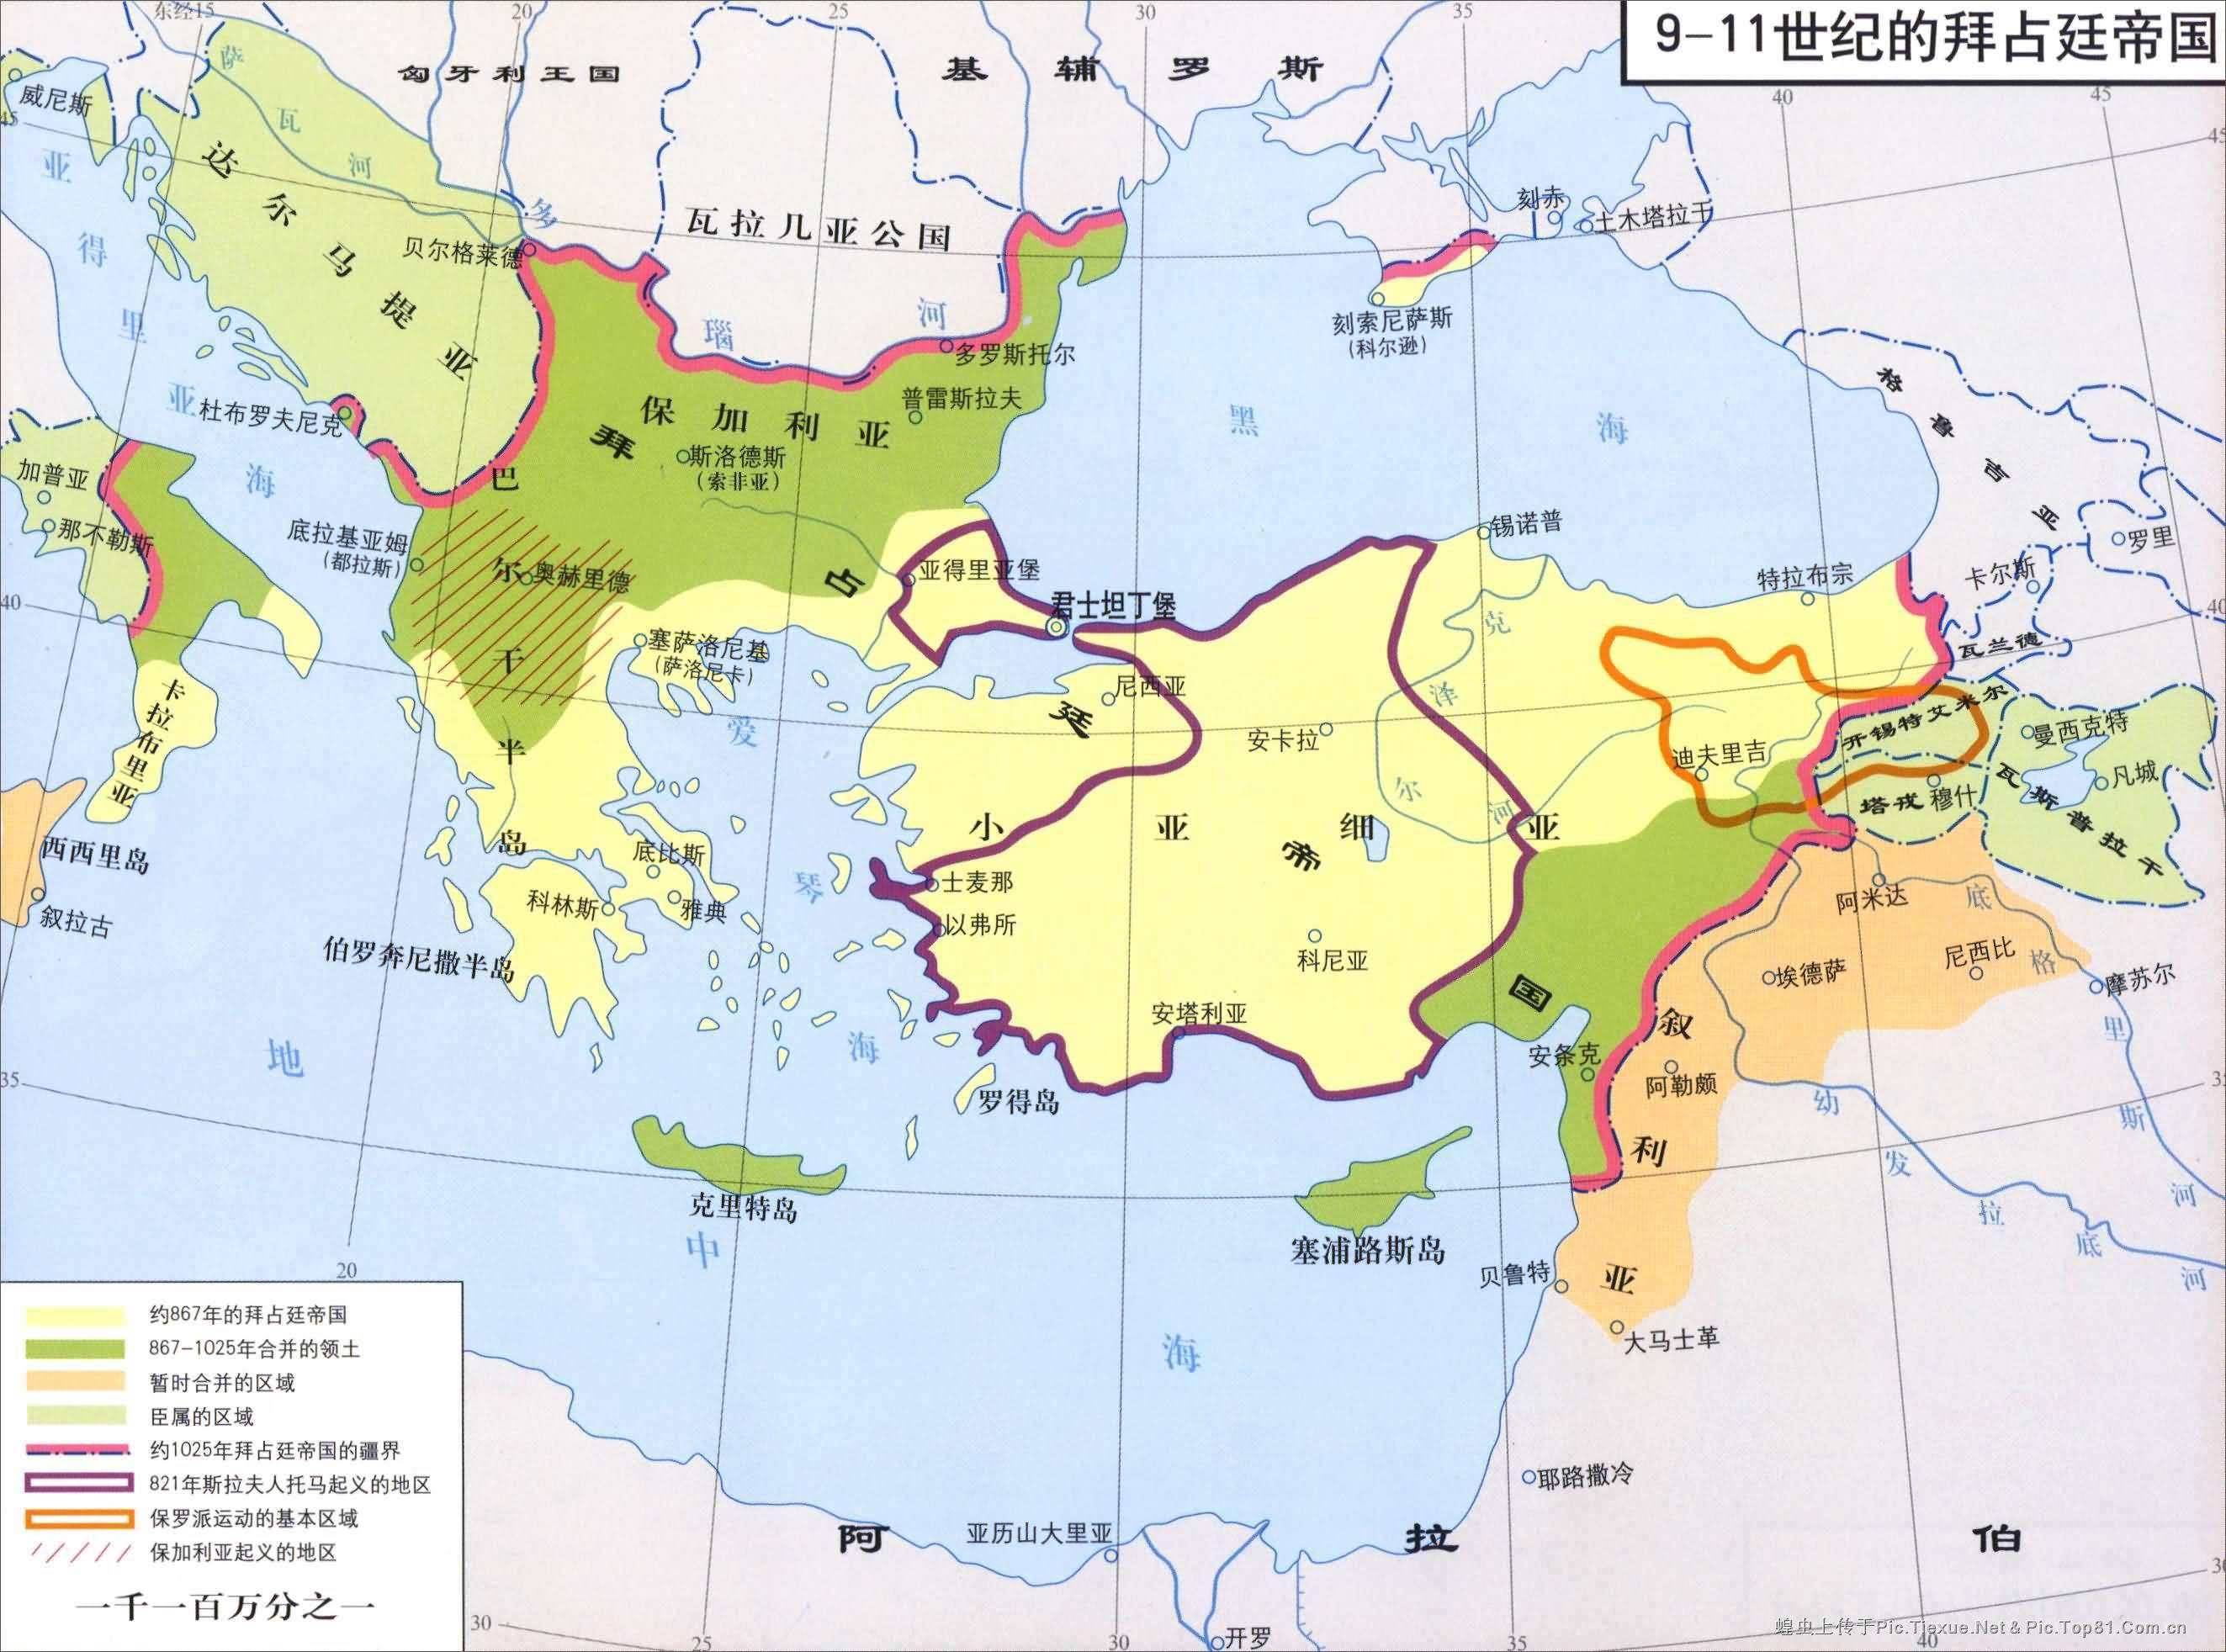 9-11世紀的拜占庭帝國